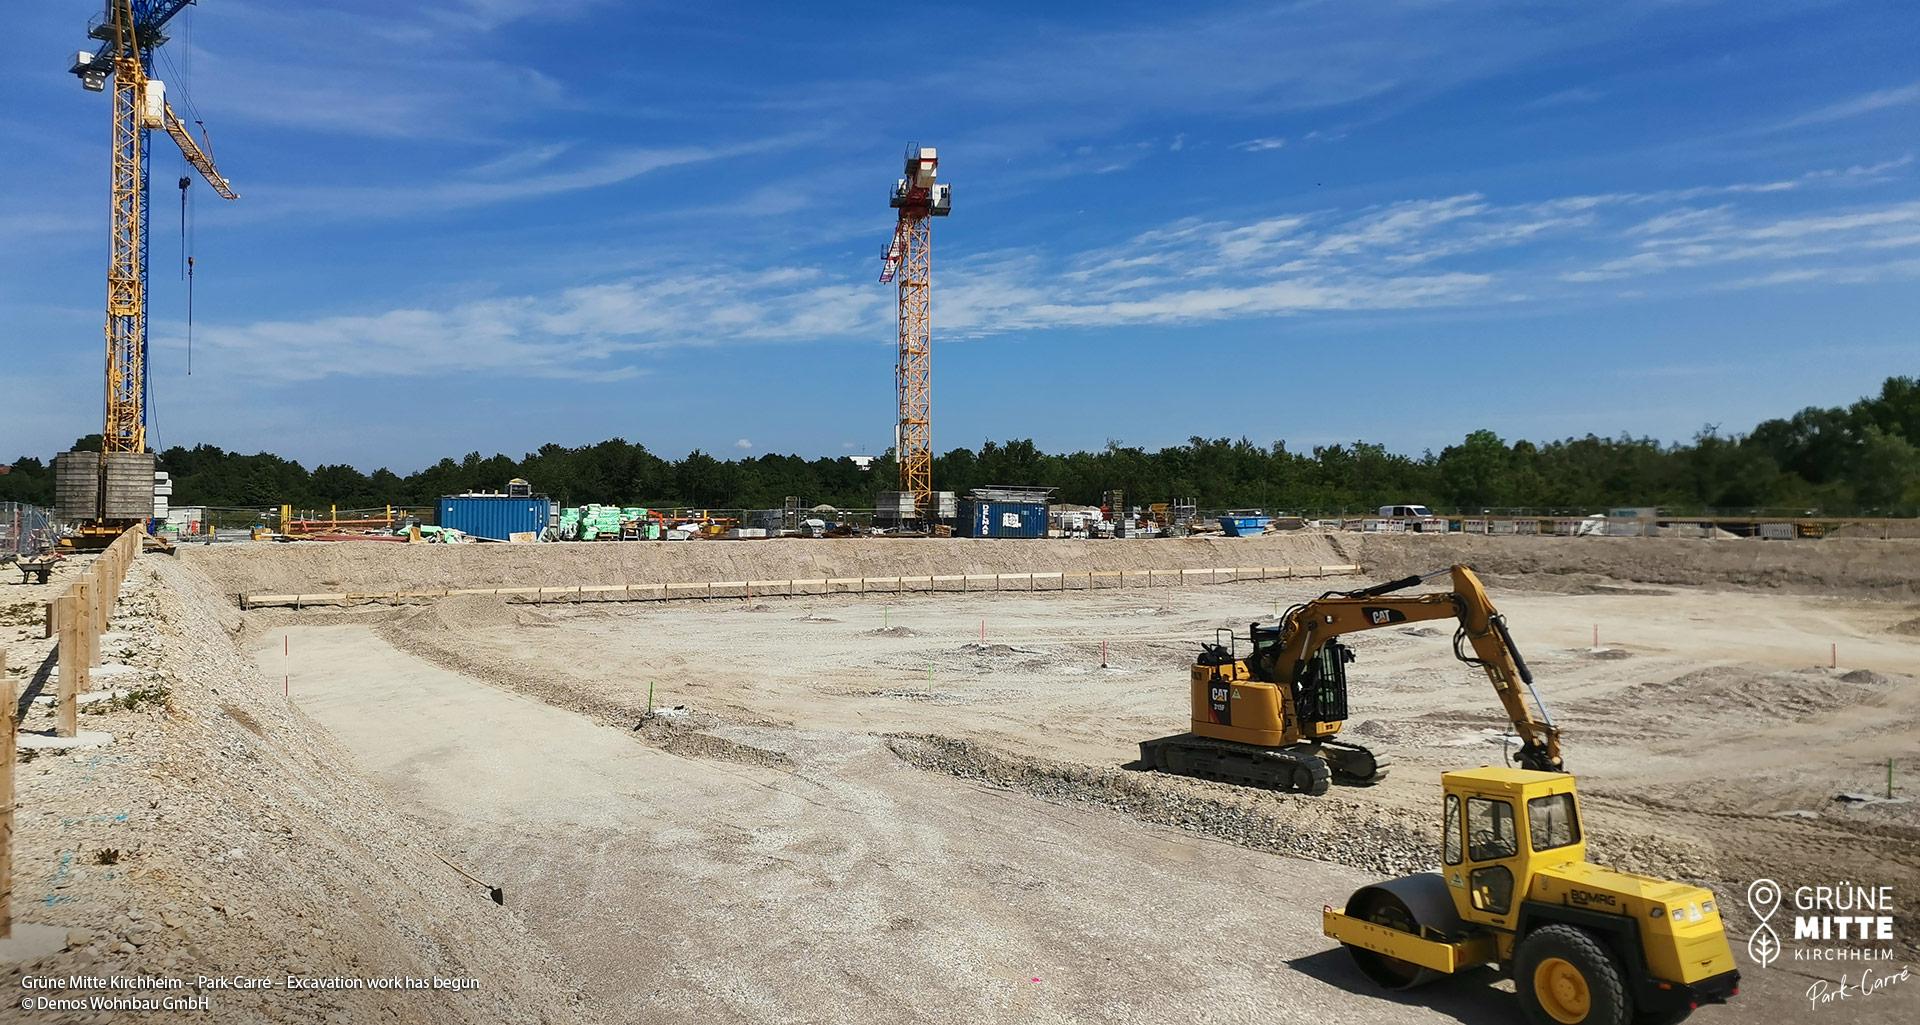 'GRÜNE MITTE KIRCHHEIM - Park Carré' in Kirchheim near Munich: Construction work has begun